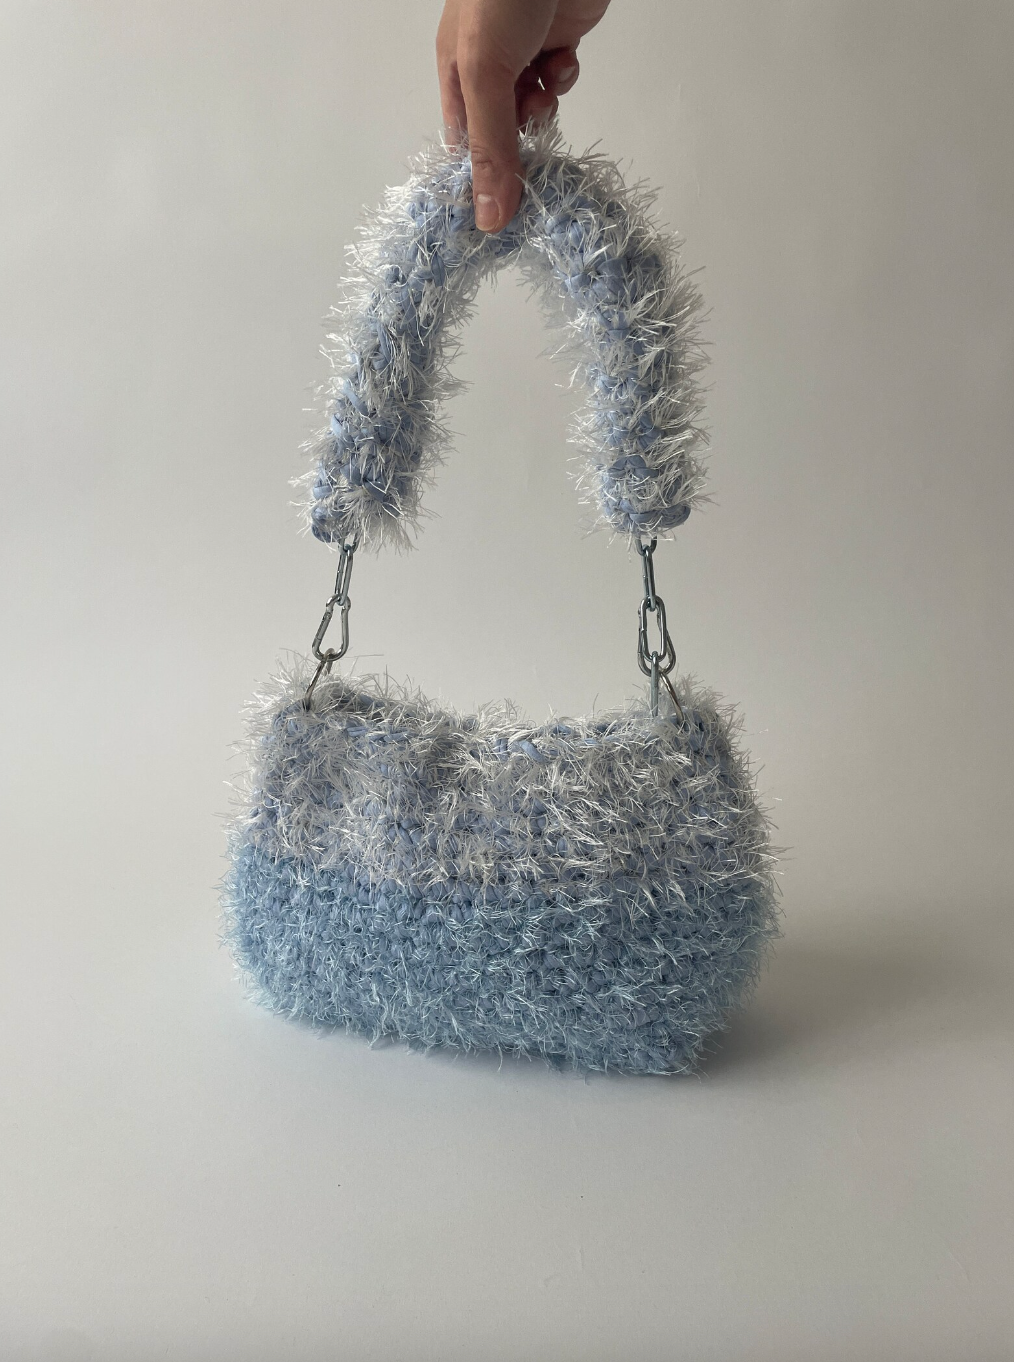 Fluffy Baby Blue Crochet Bag - Medium JOE